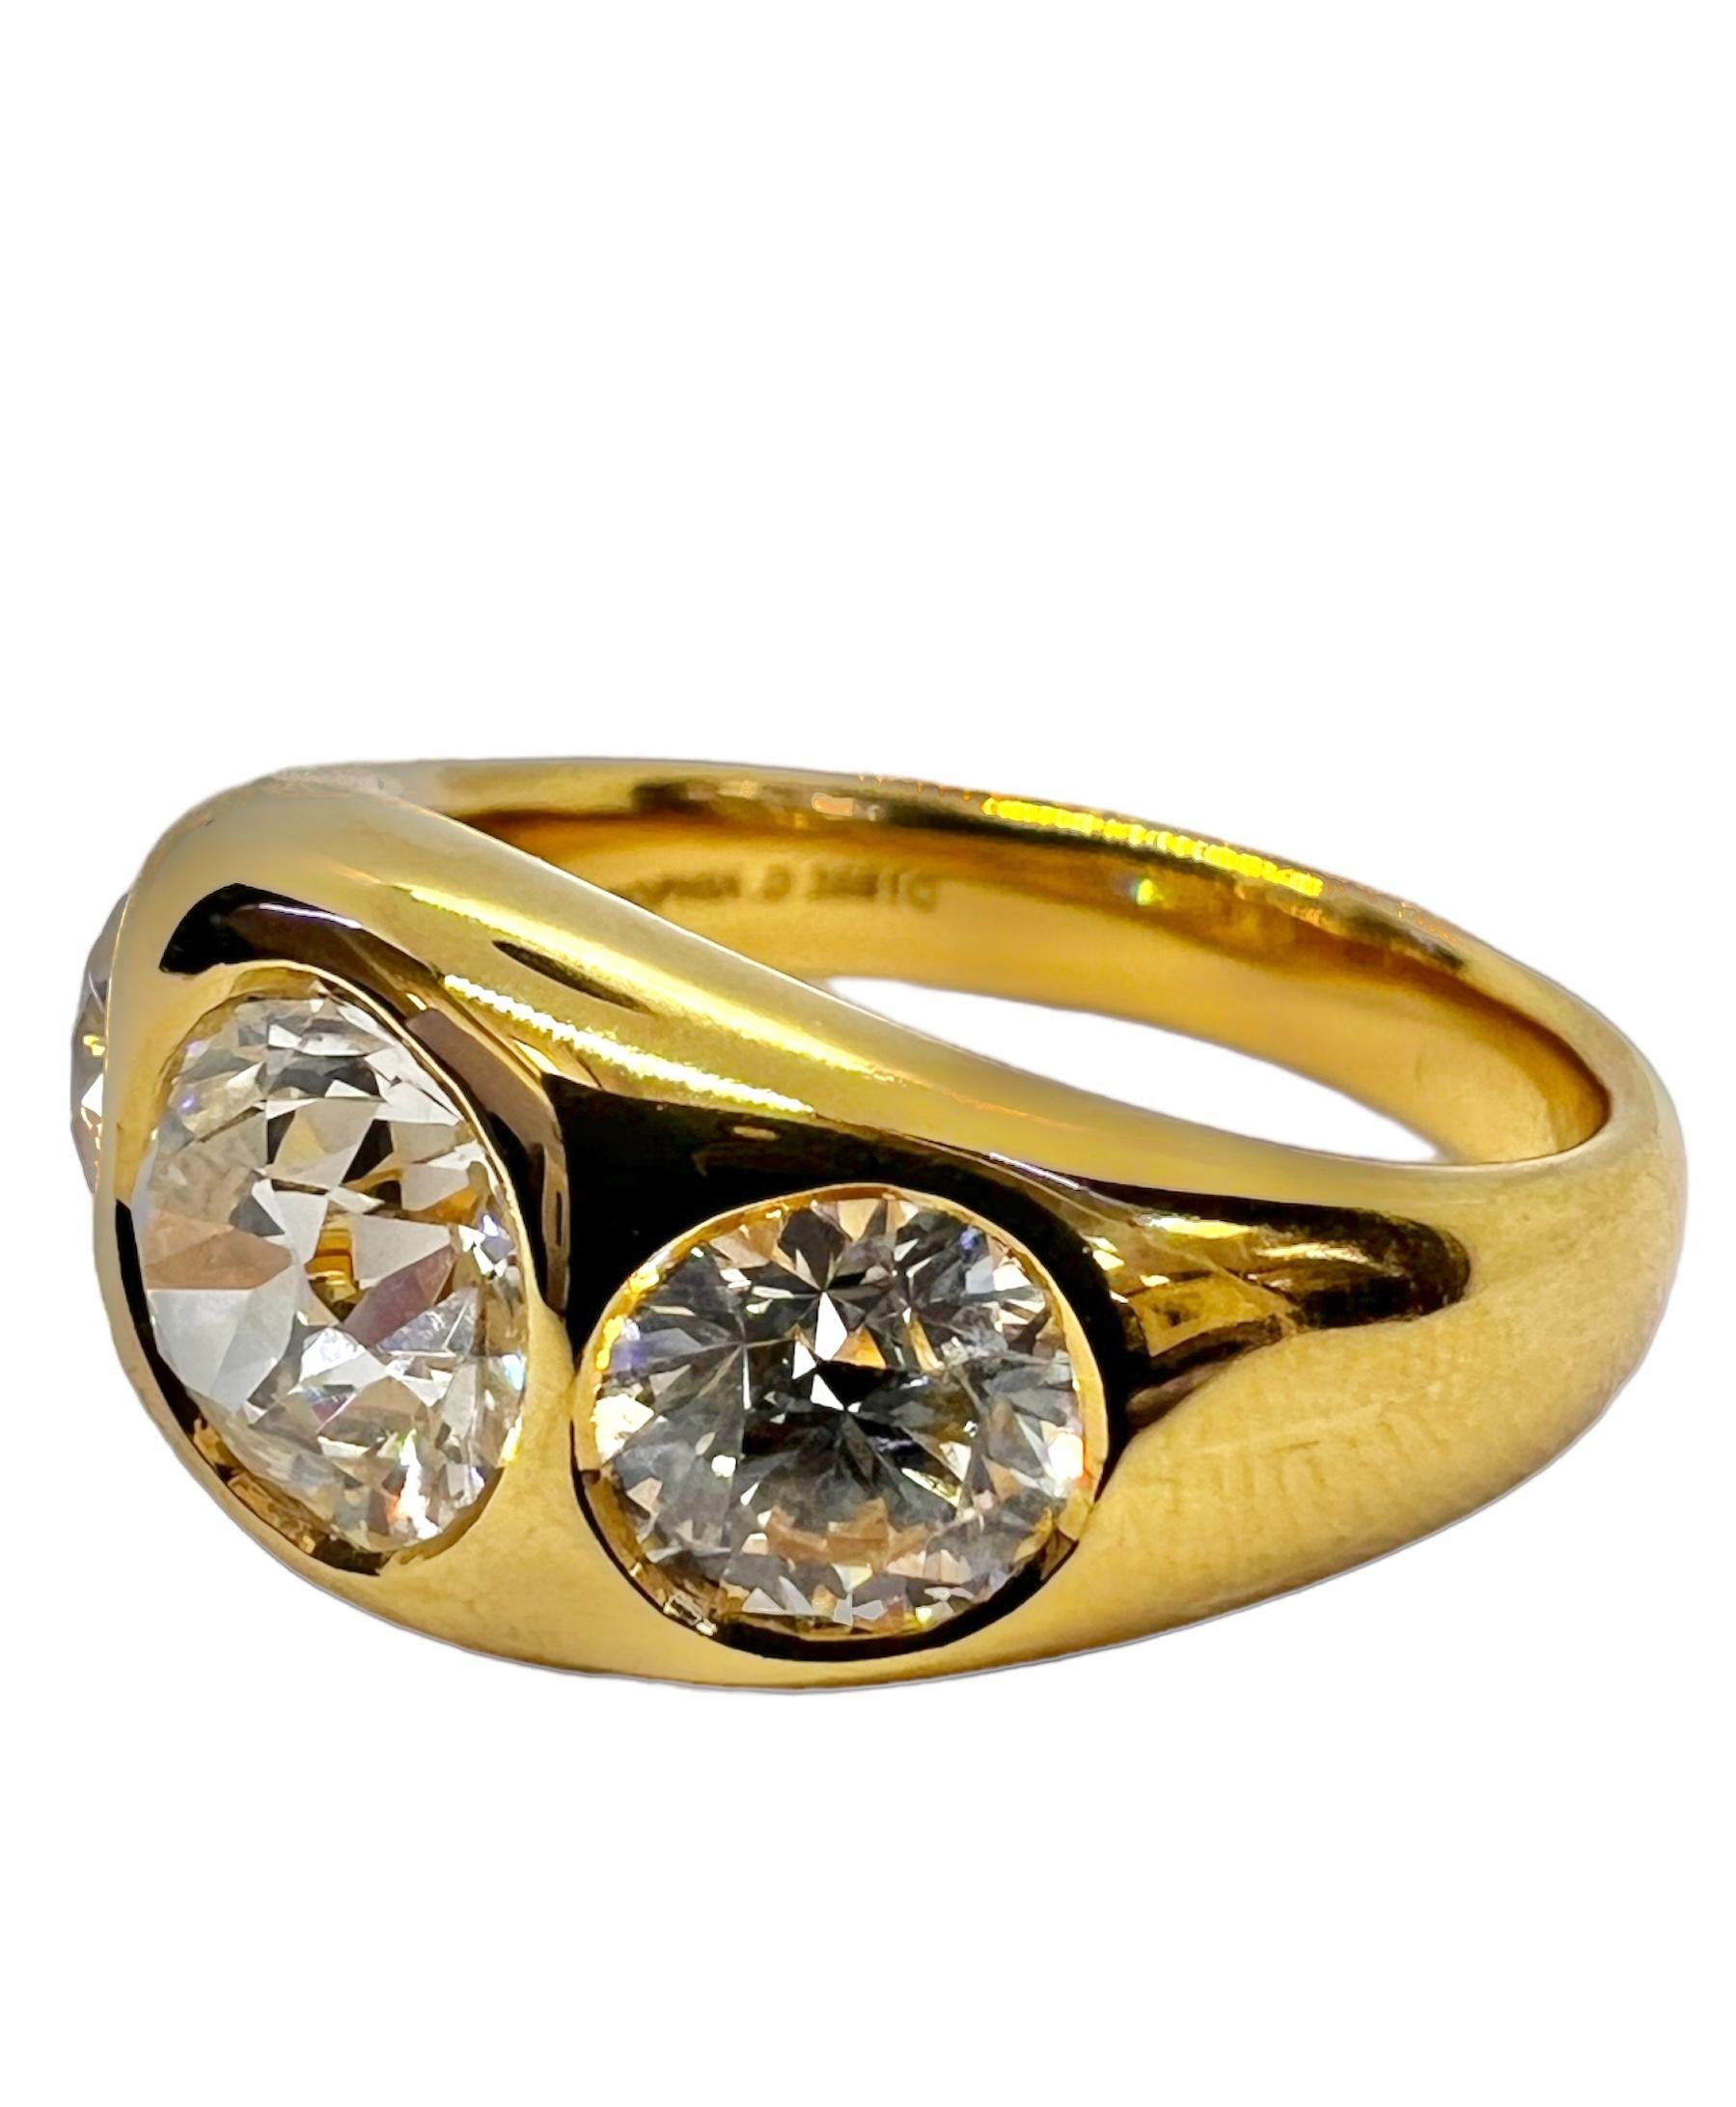 Bague en or jaune 18K sertie d'un diamant certifié GIA de 1,63 carat LVS2, 0,44 carat HVS2 et 0,39 carat HVS1. 

Sophia D by Joseph Dardashti Ltd est connue dans le monde entier depuis 35 ans et s'inspire du design classique de l'Art déco qui